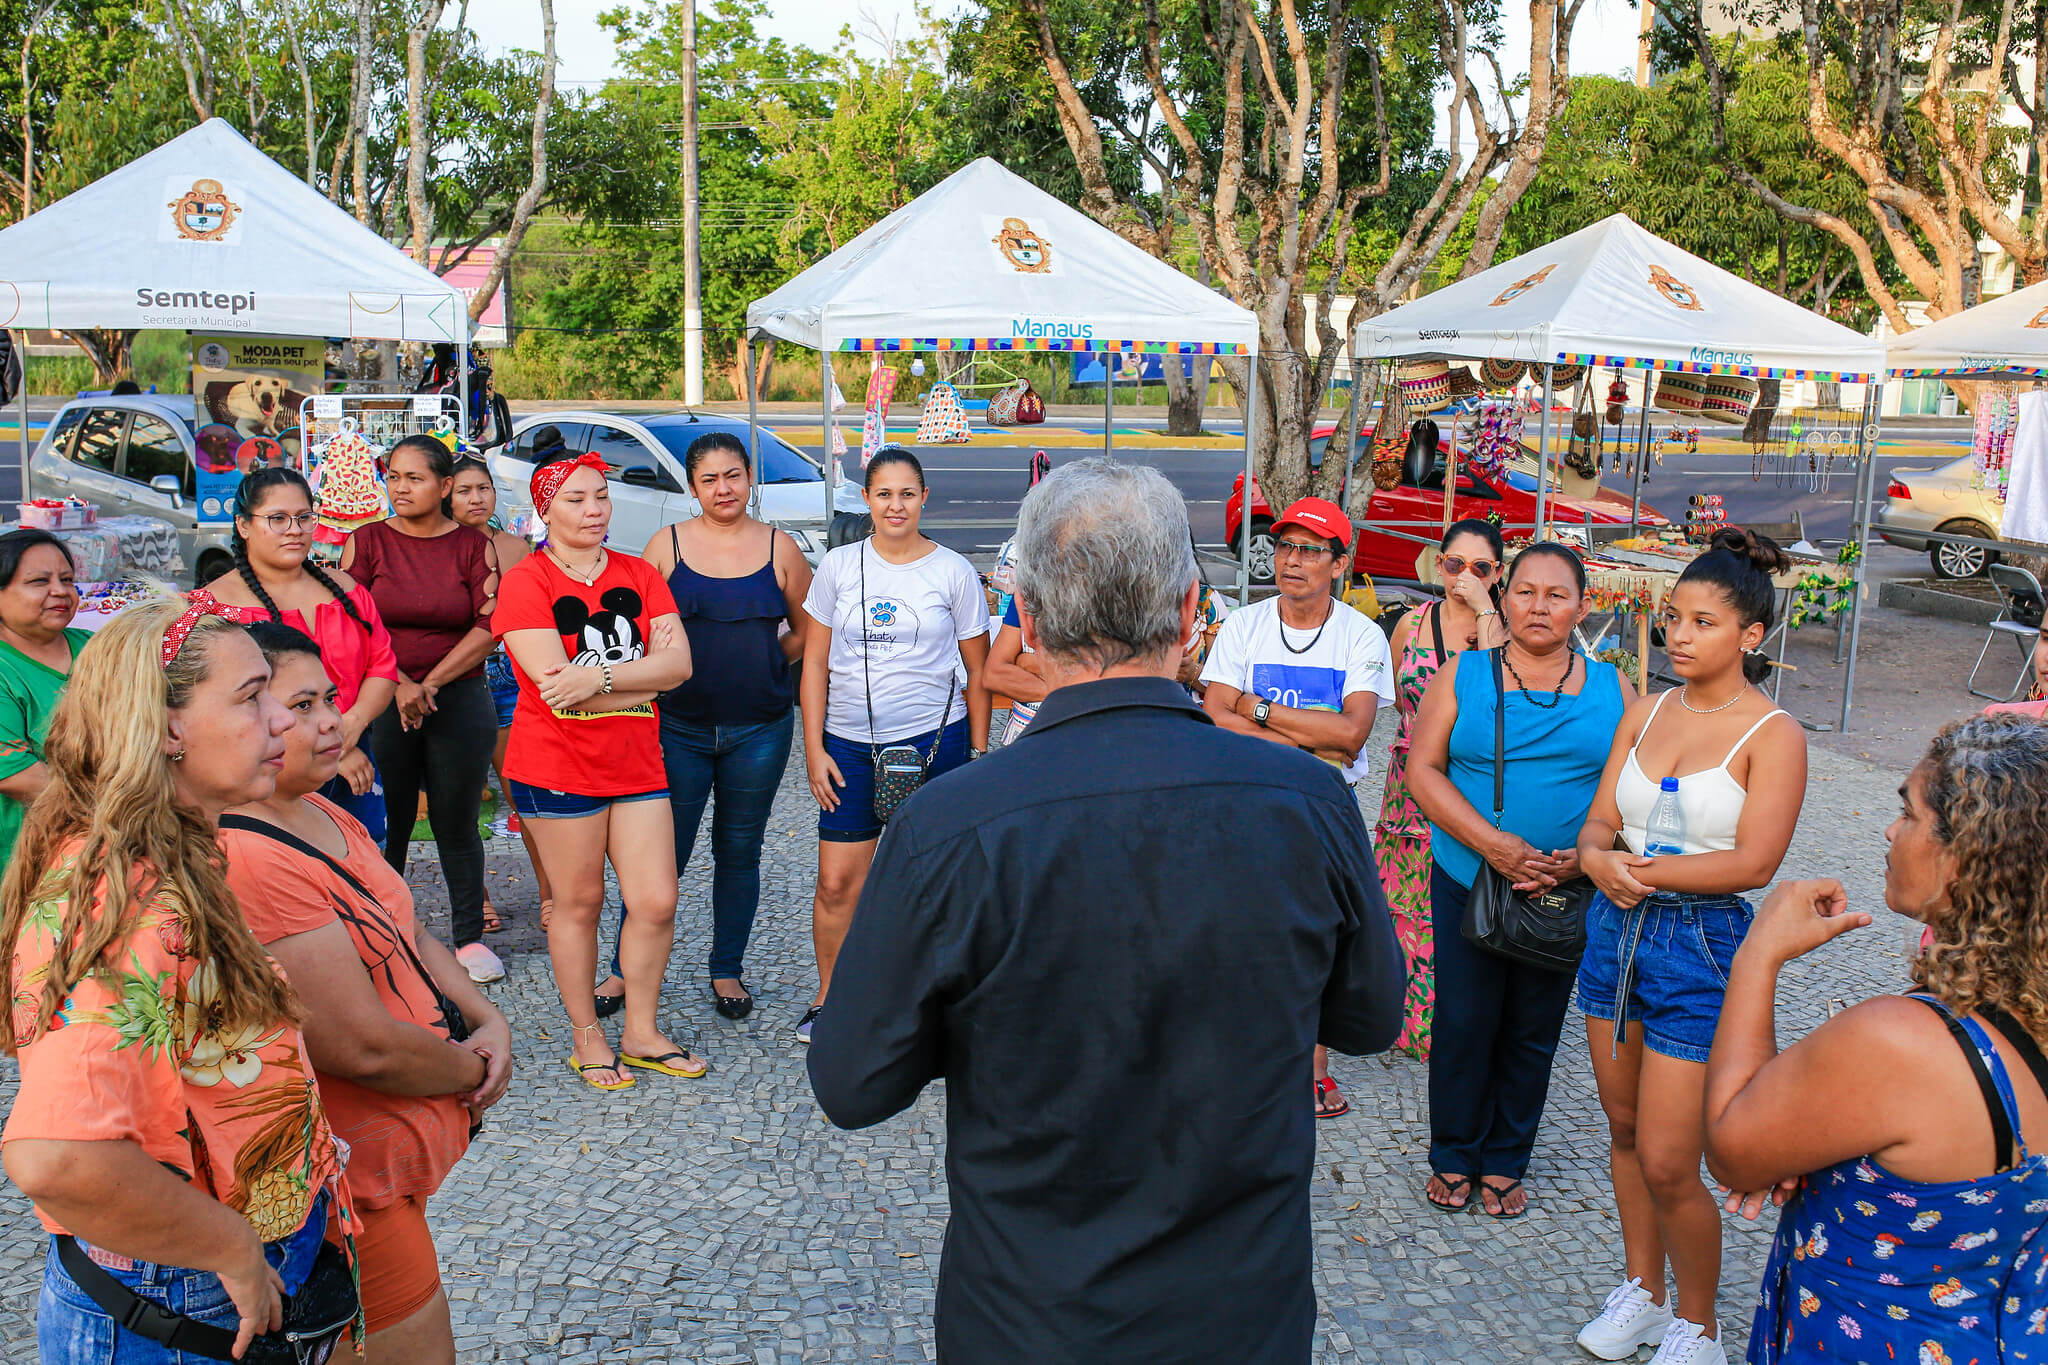 Prefeitura de Manaus anuncia nova programação para as feiras itinerantes de economia solidária e criativa